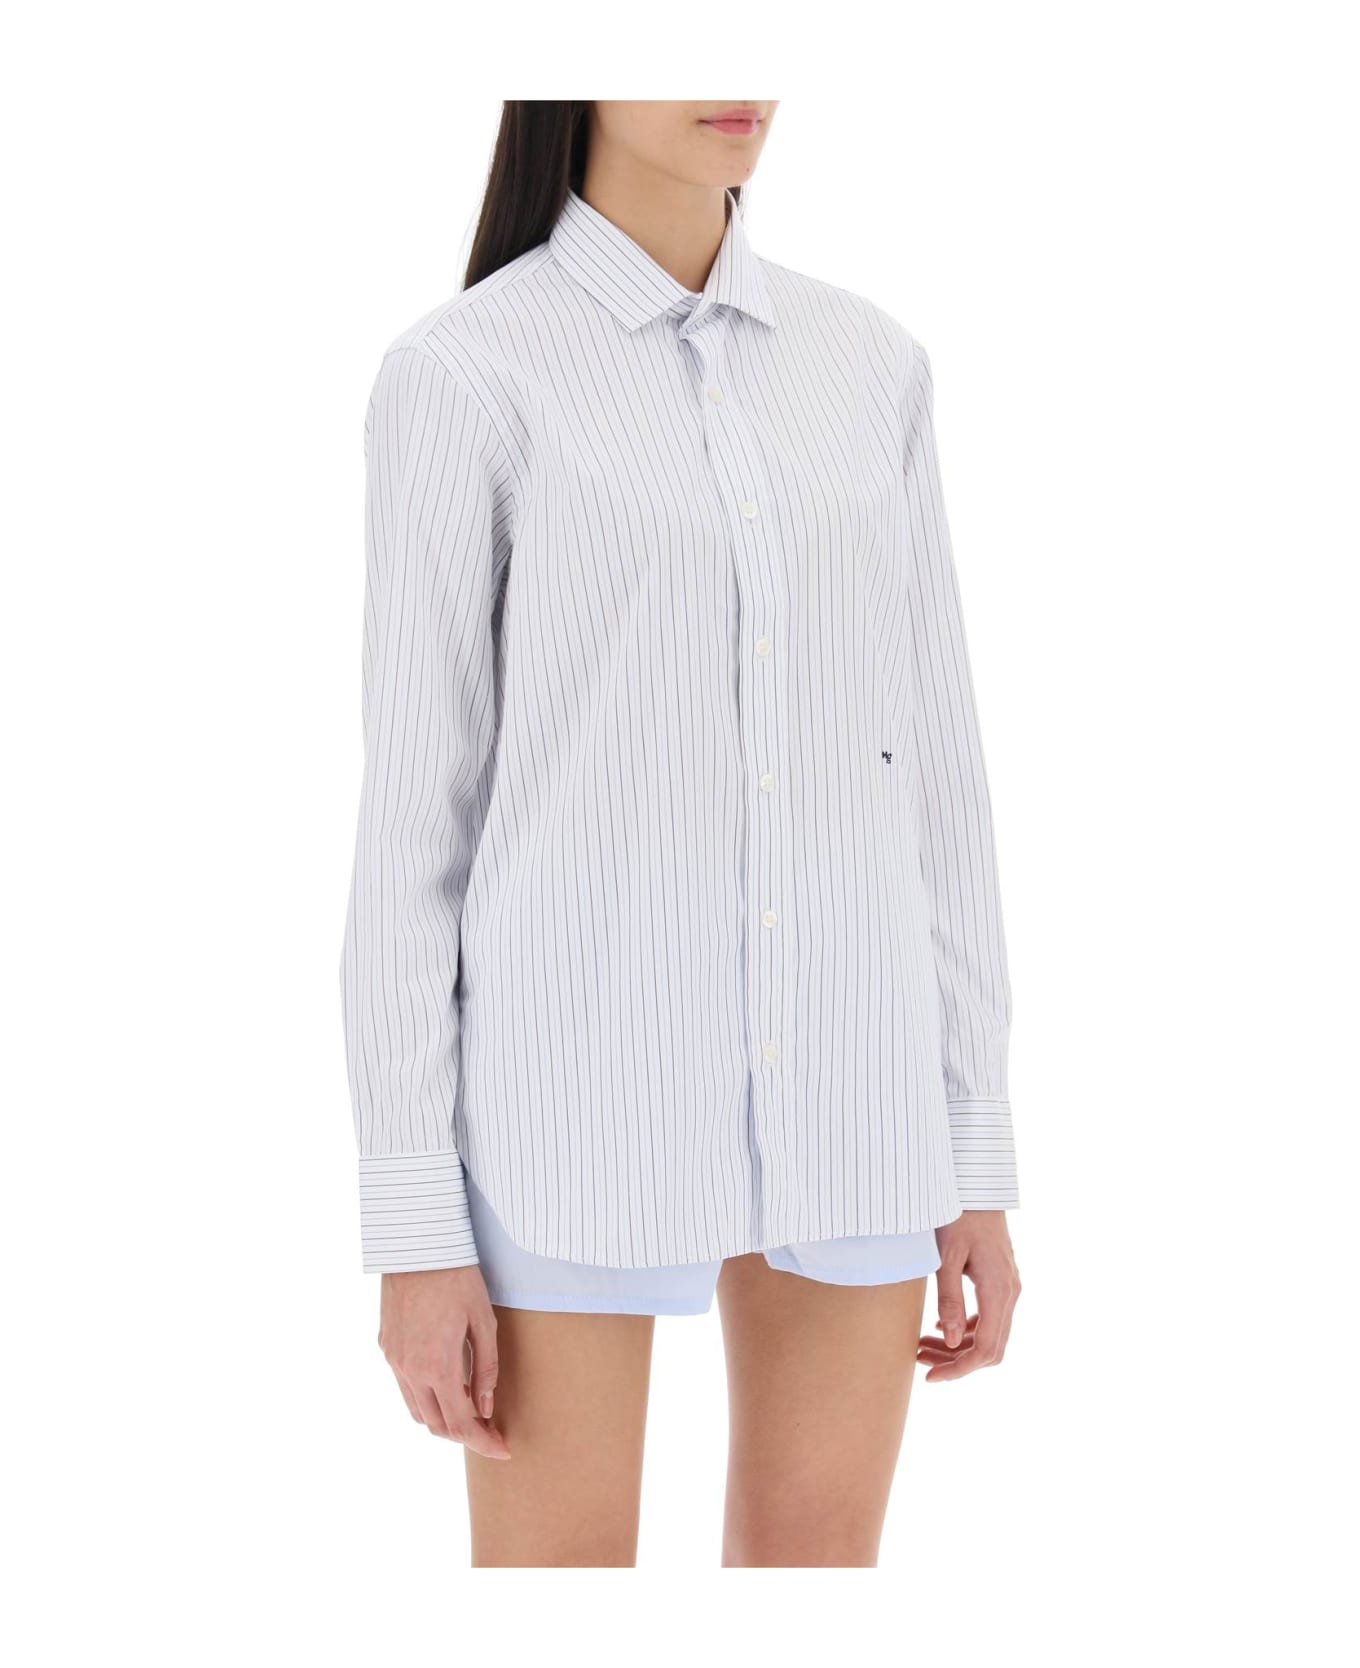 HommeGirls Striped Poplin Shirt - WHITE BLUE (White) シャツ